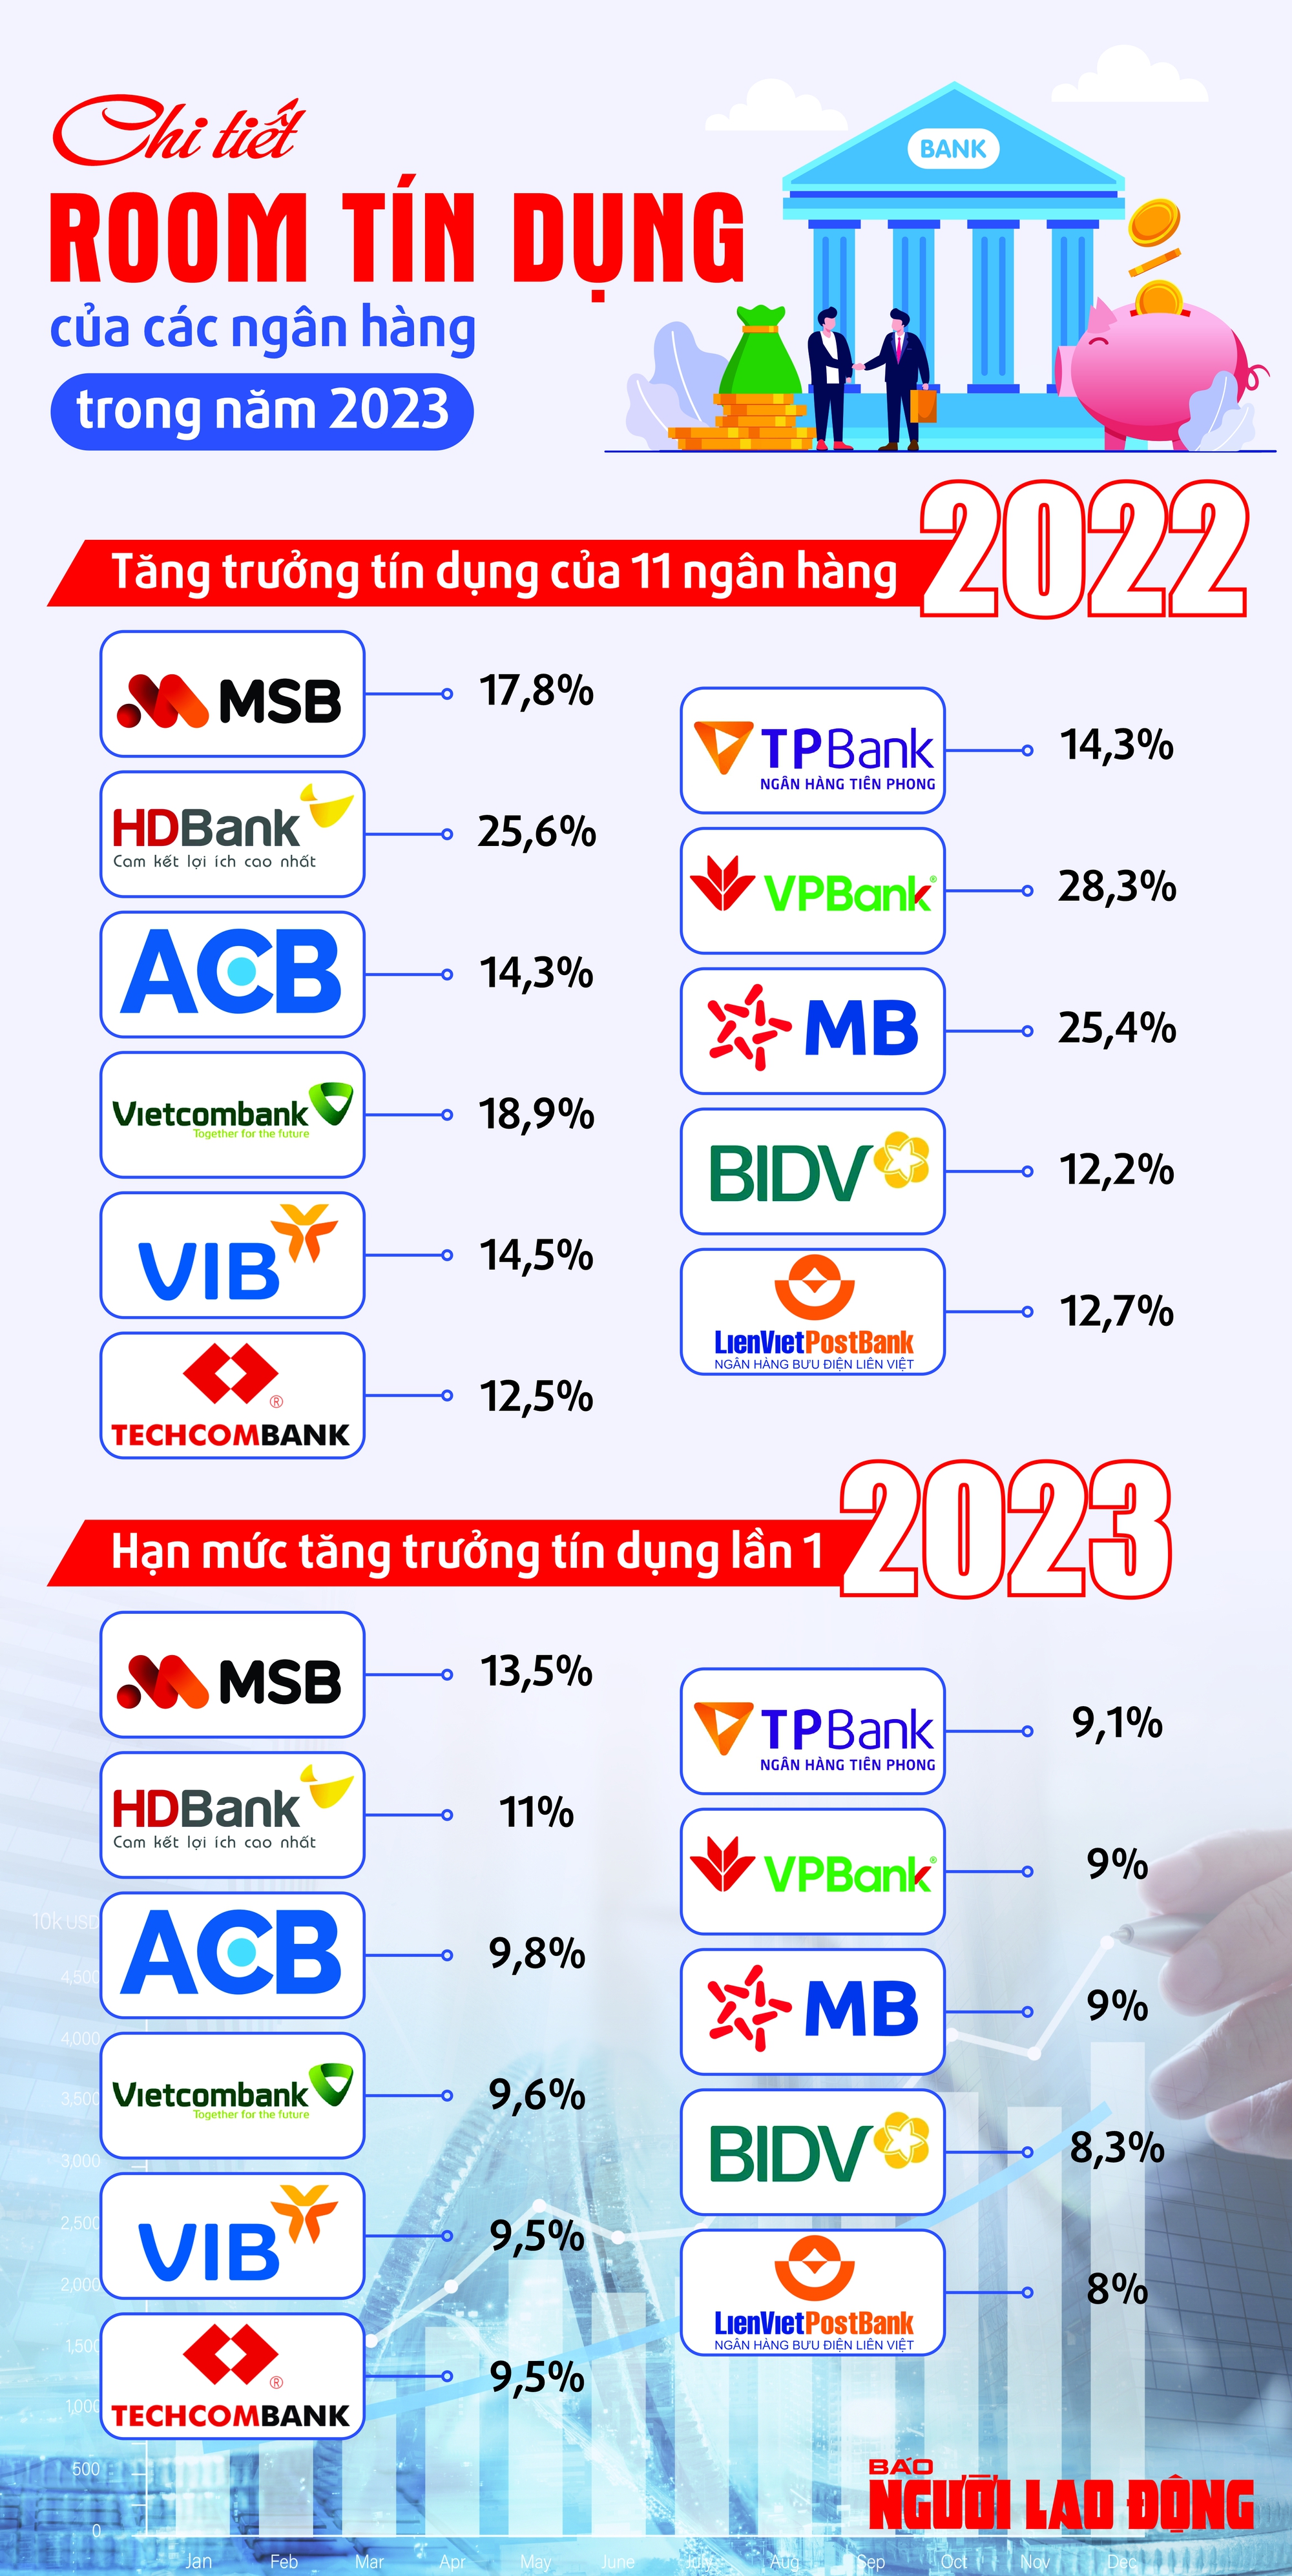 [Infographic] Chi tiết room tín dụng của các ngân hàng trong năm 2023 - 1